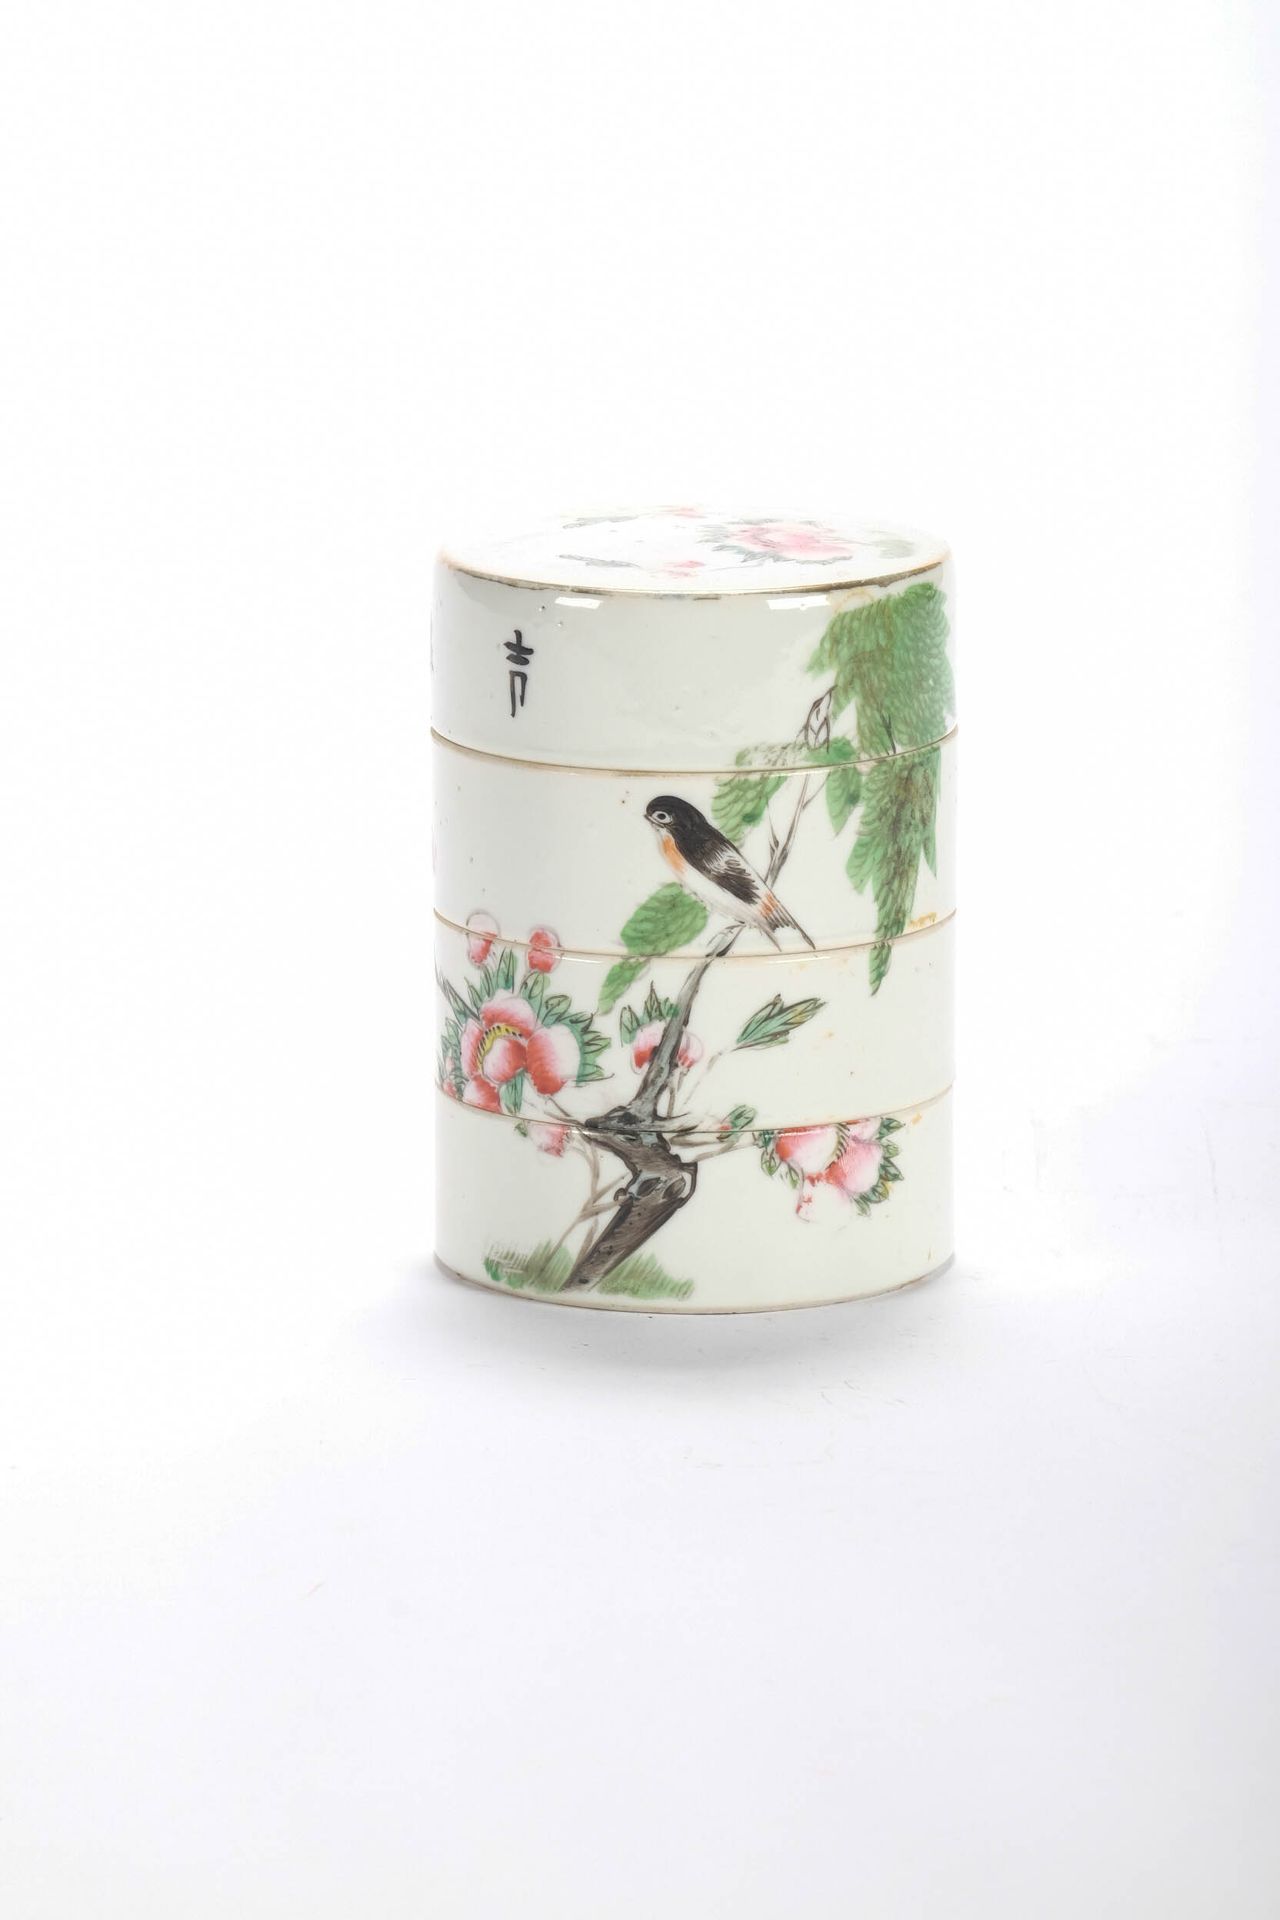 CHINE (CHINA, 中国) Pot en porcelaine à 4 compartiments. H 11 cm D 8 cm. XIX.